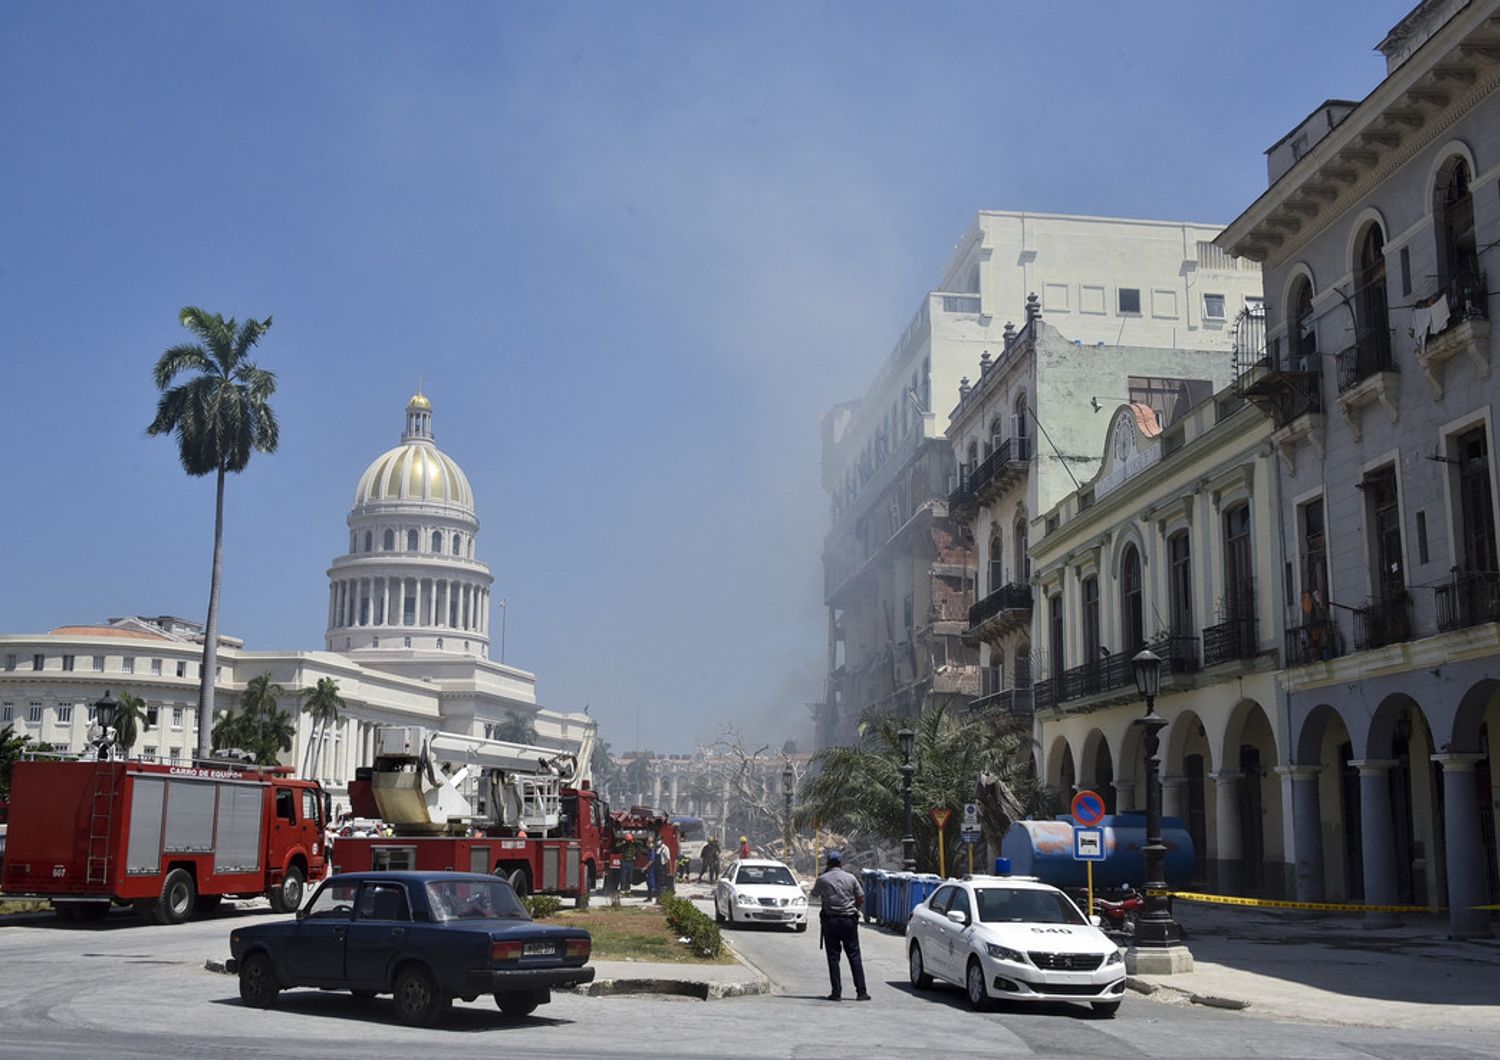 L'edificio del Saratoga Hotel danneggiato dall'esplosione all'Avana&nbsp;